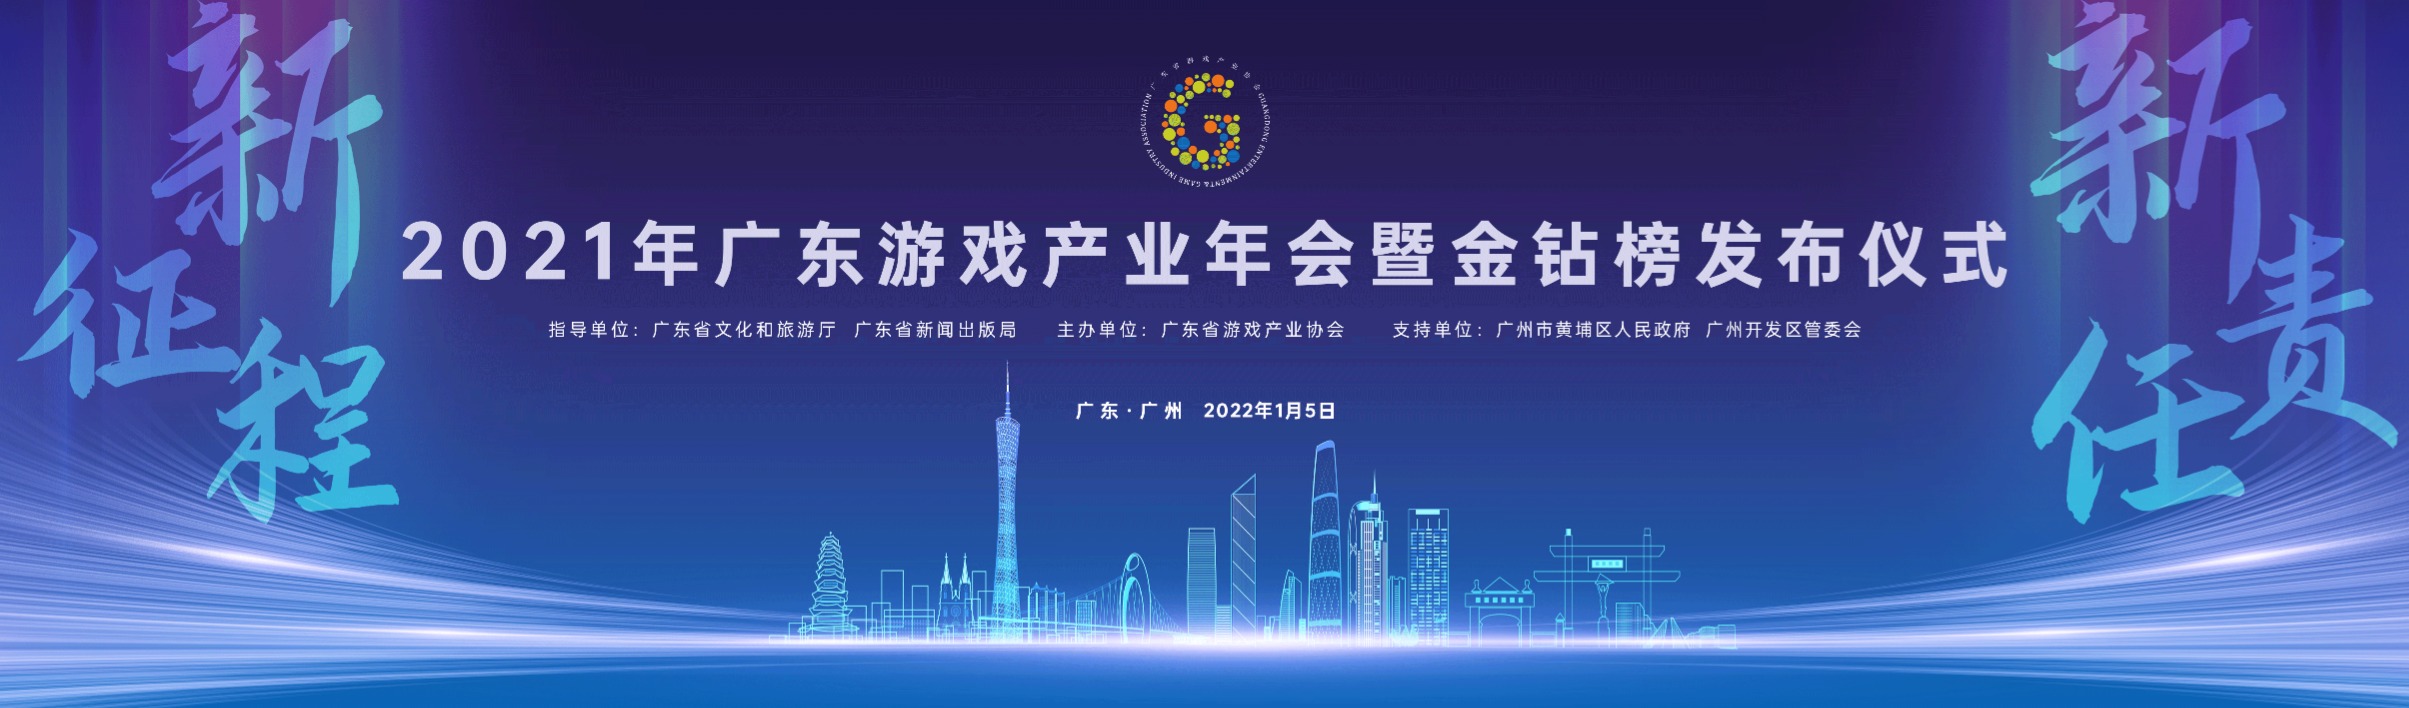 2021广东游戏产业年会暨“金钻榜”发布仪式将于5日在穗举办